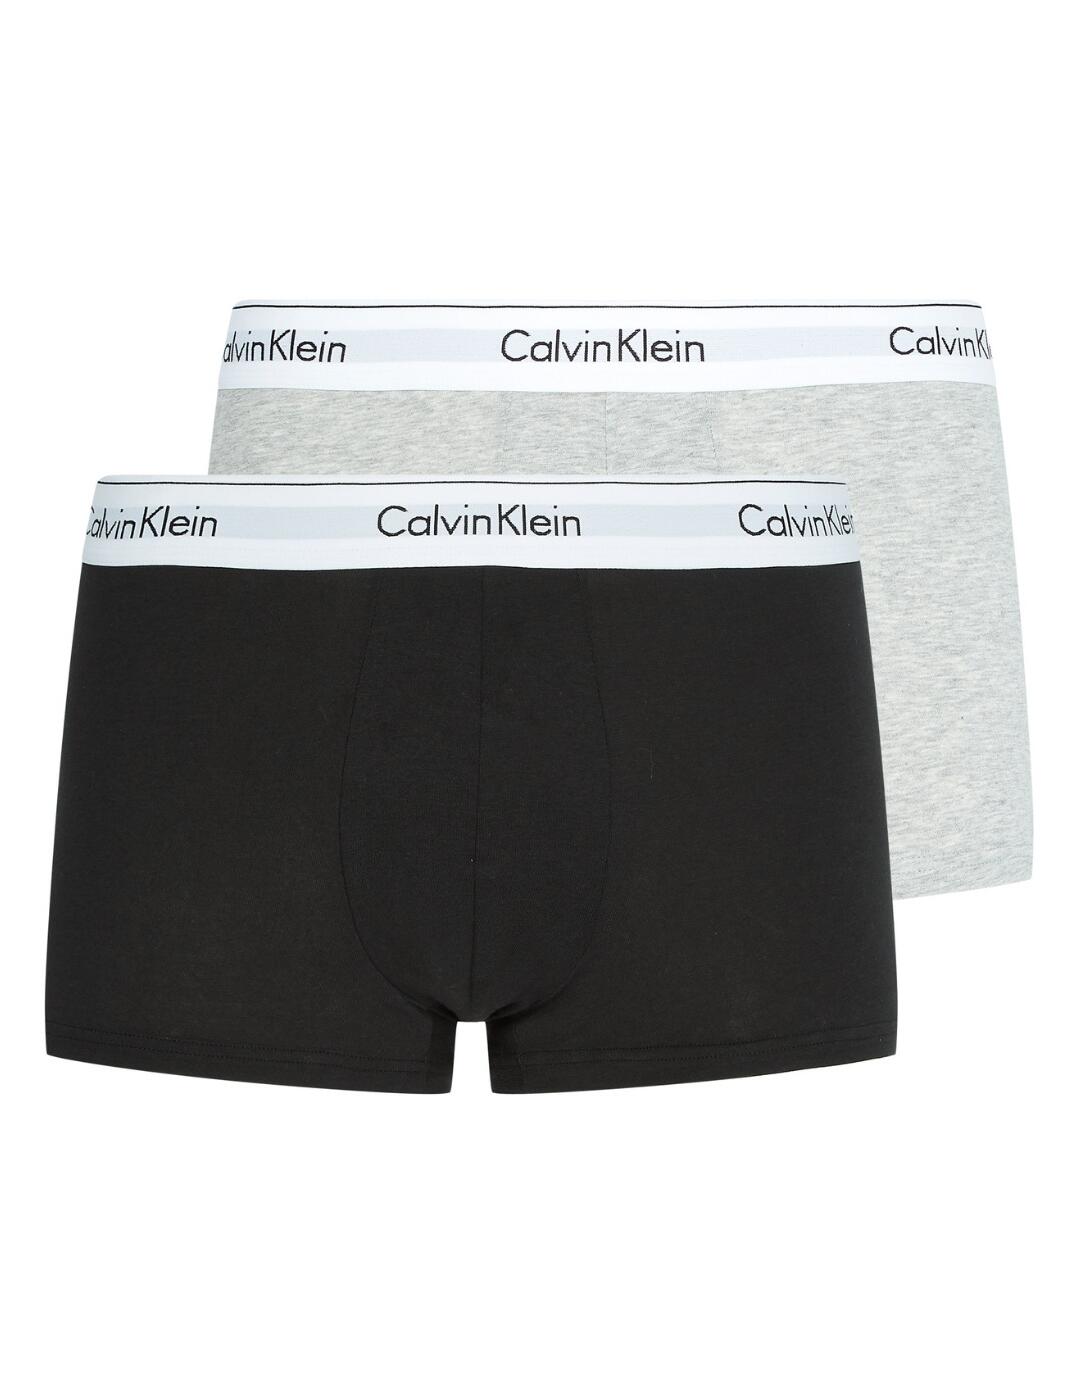 Calvin Klein Mens Modern Cotton Trunk Briefs 2 Pack Heather Grey/Black